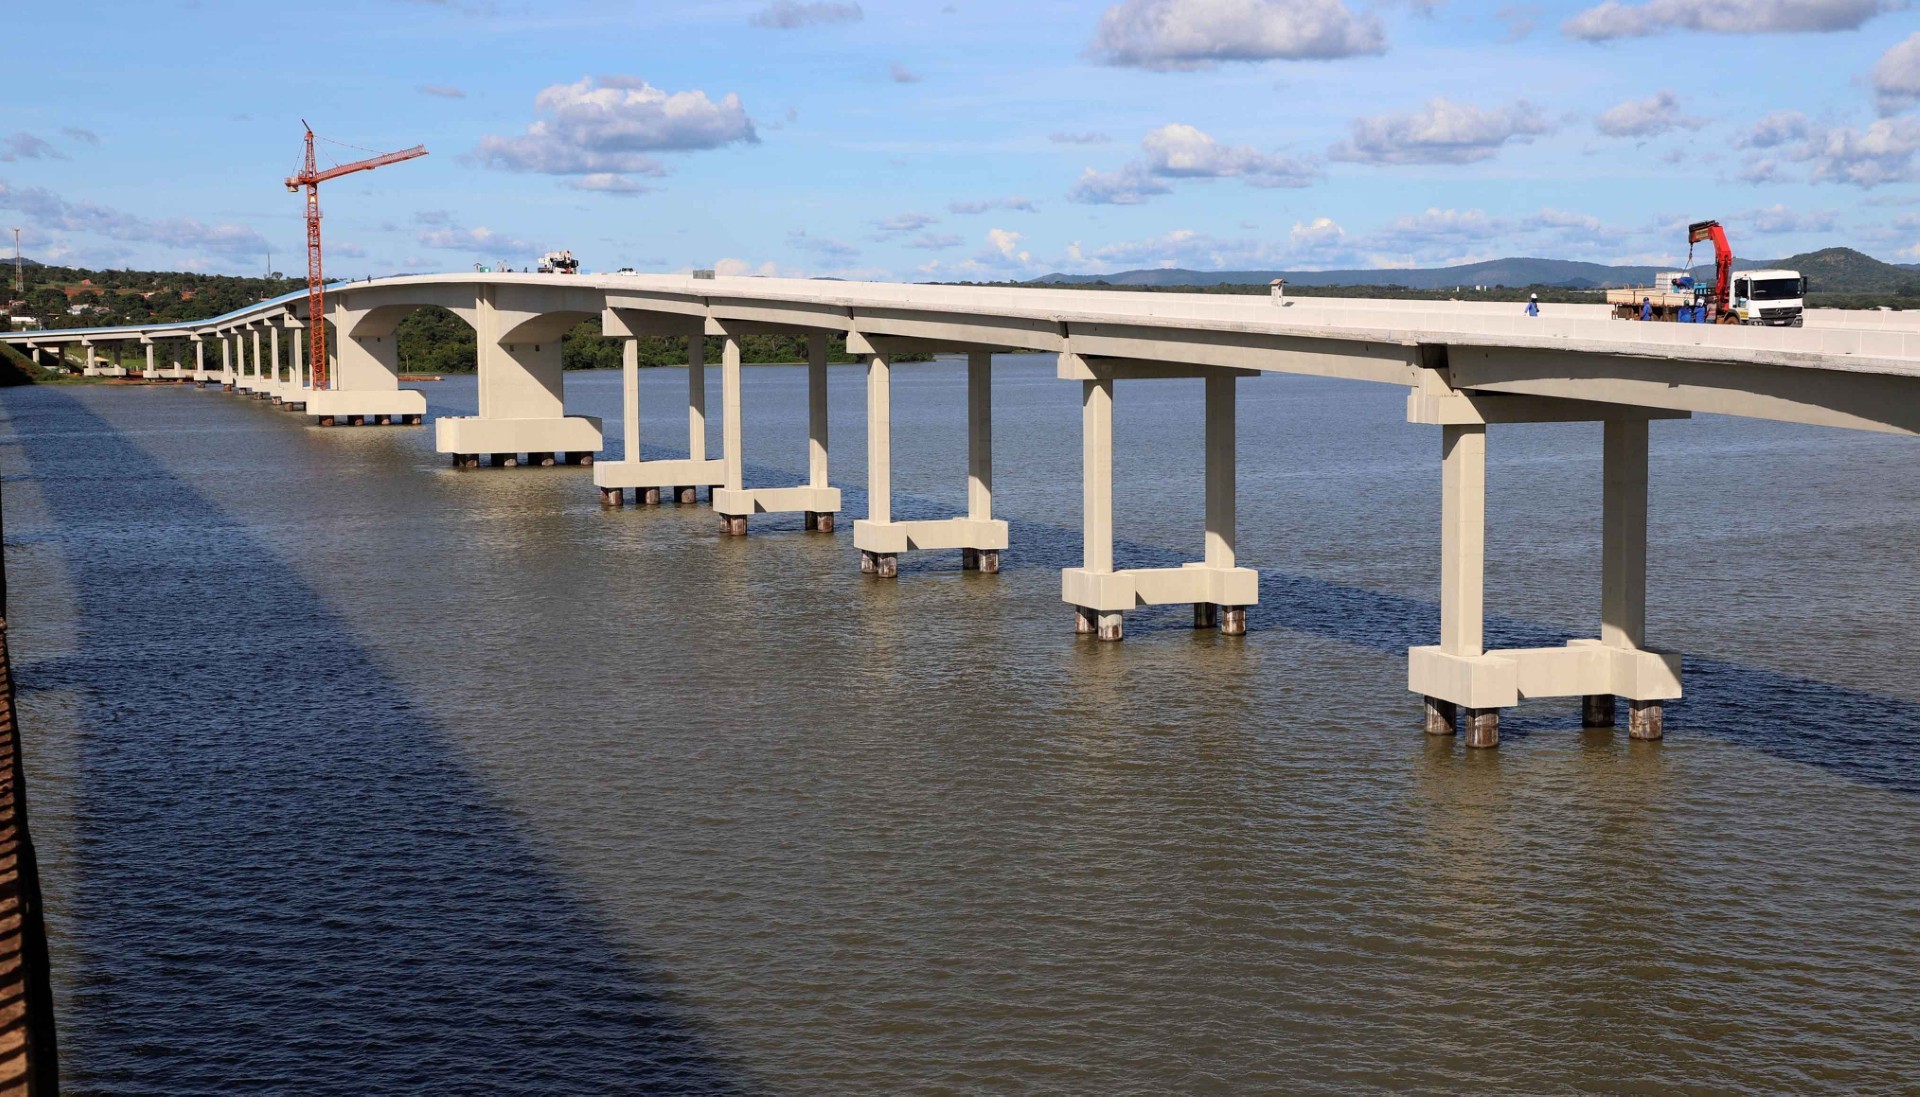 Entrega da ponte de Porto Nacional está prevista para o dia 14 de julho, diz governador